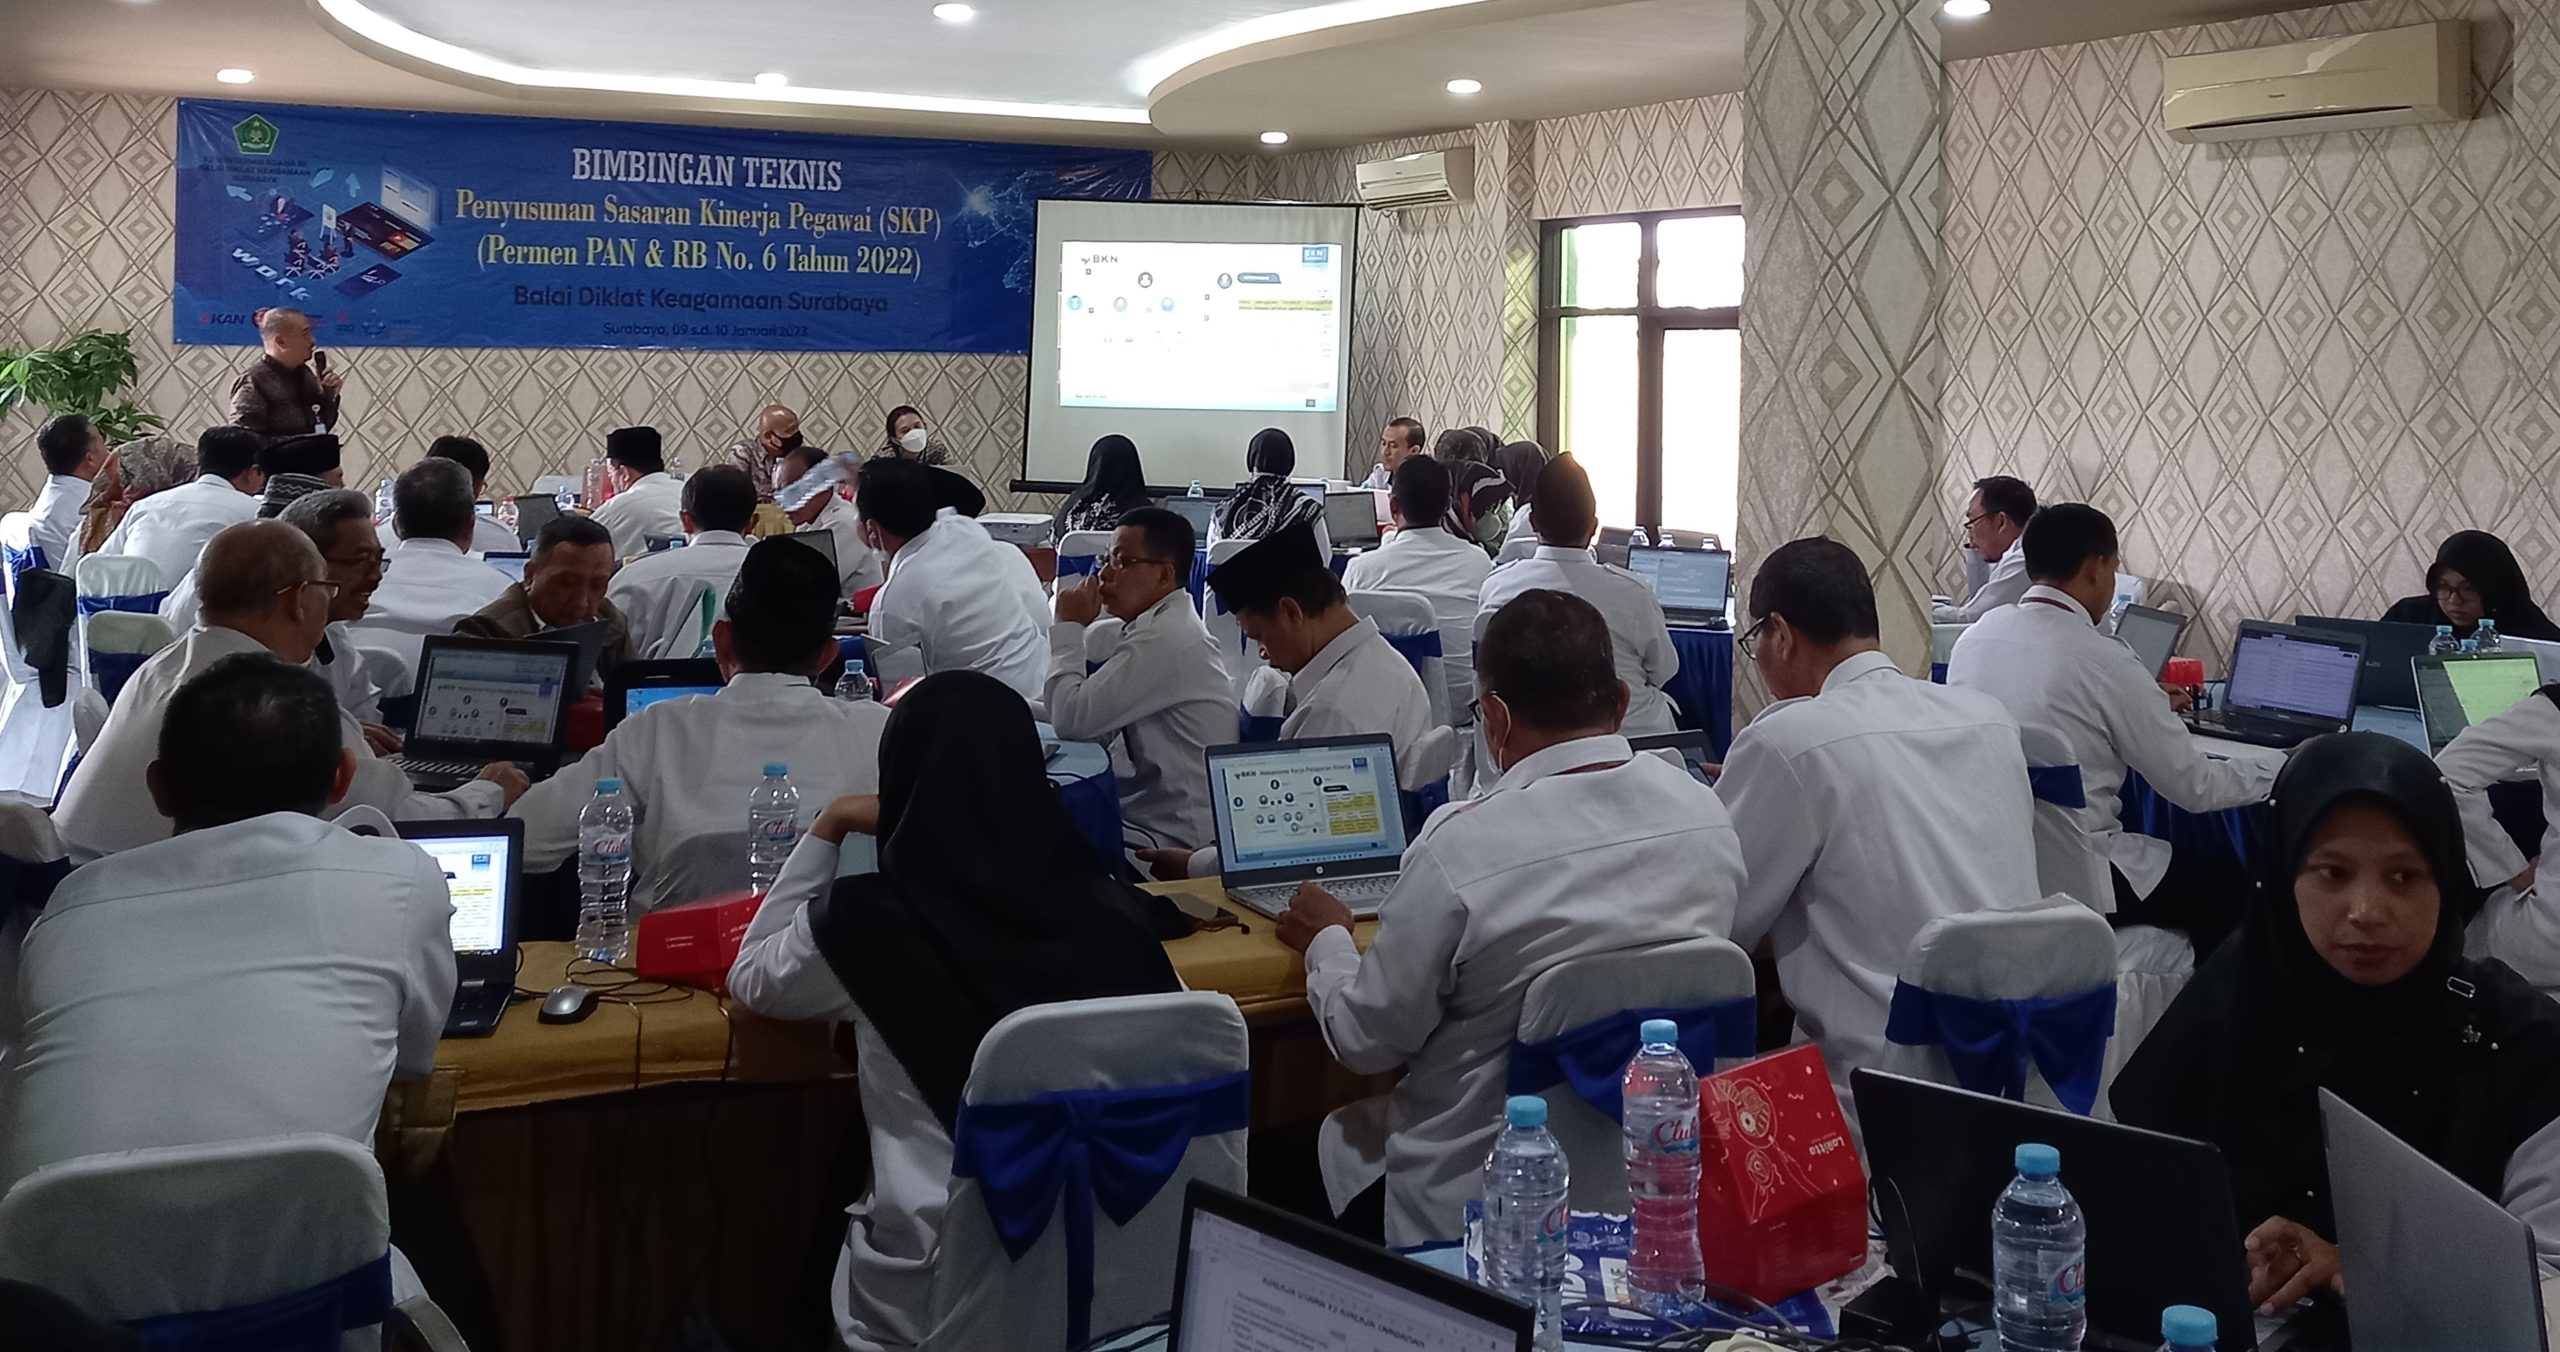 BDK Surabaya Adakan Bimbingan Teknis Penyusunan SKP